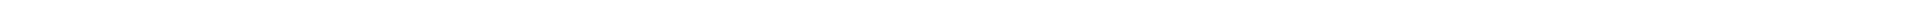 Лечение кариеса зубов - цены в Астане, Алматы, Атырау, Усть-Каменогорск, Уральск, Кокшетау в Казахстане, фото 7